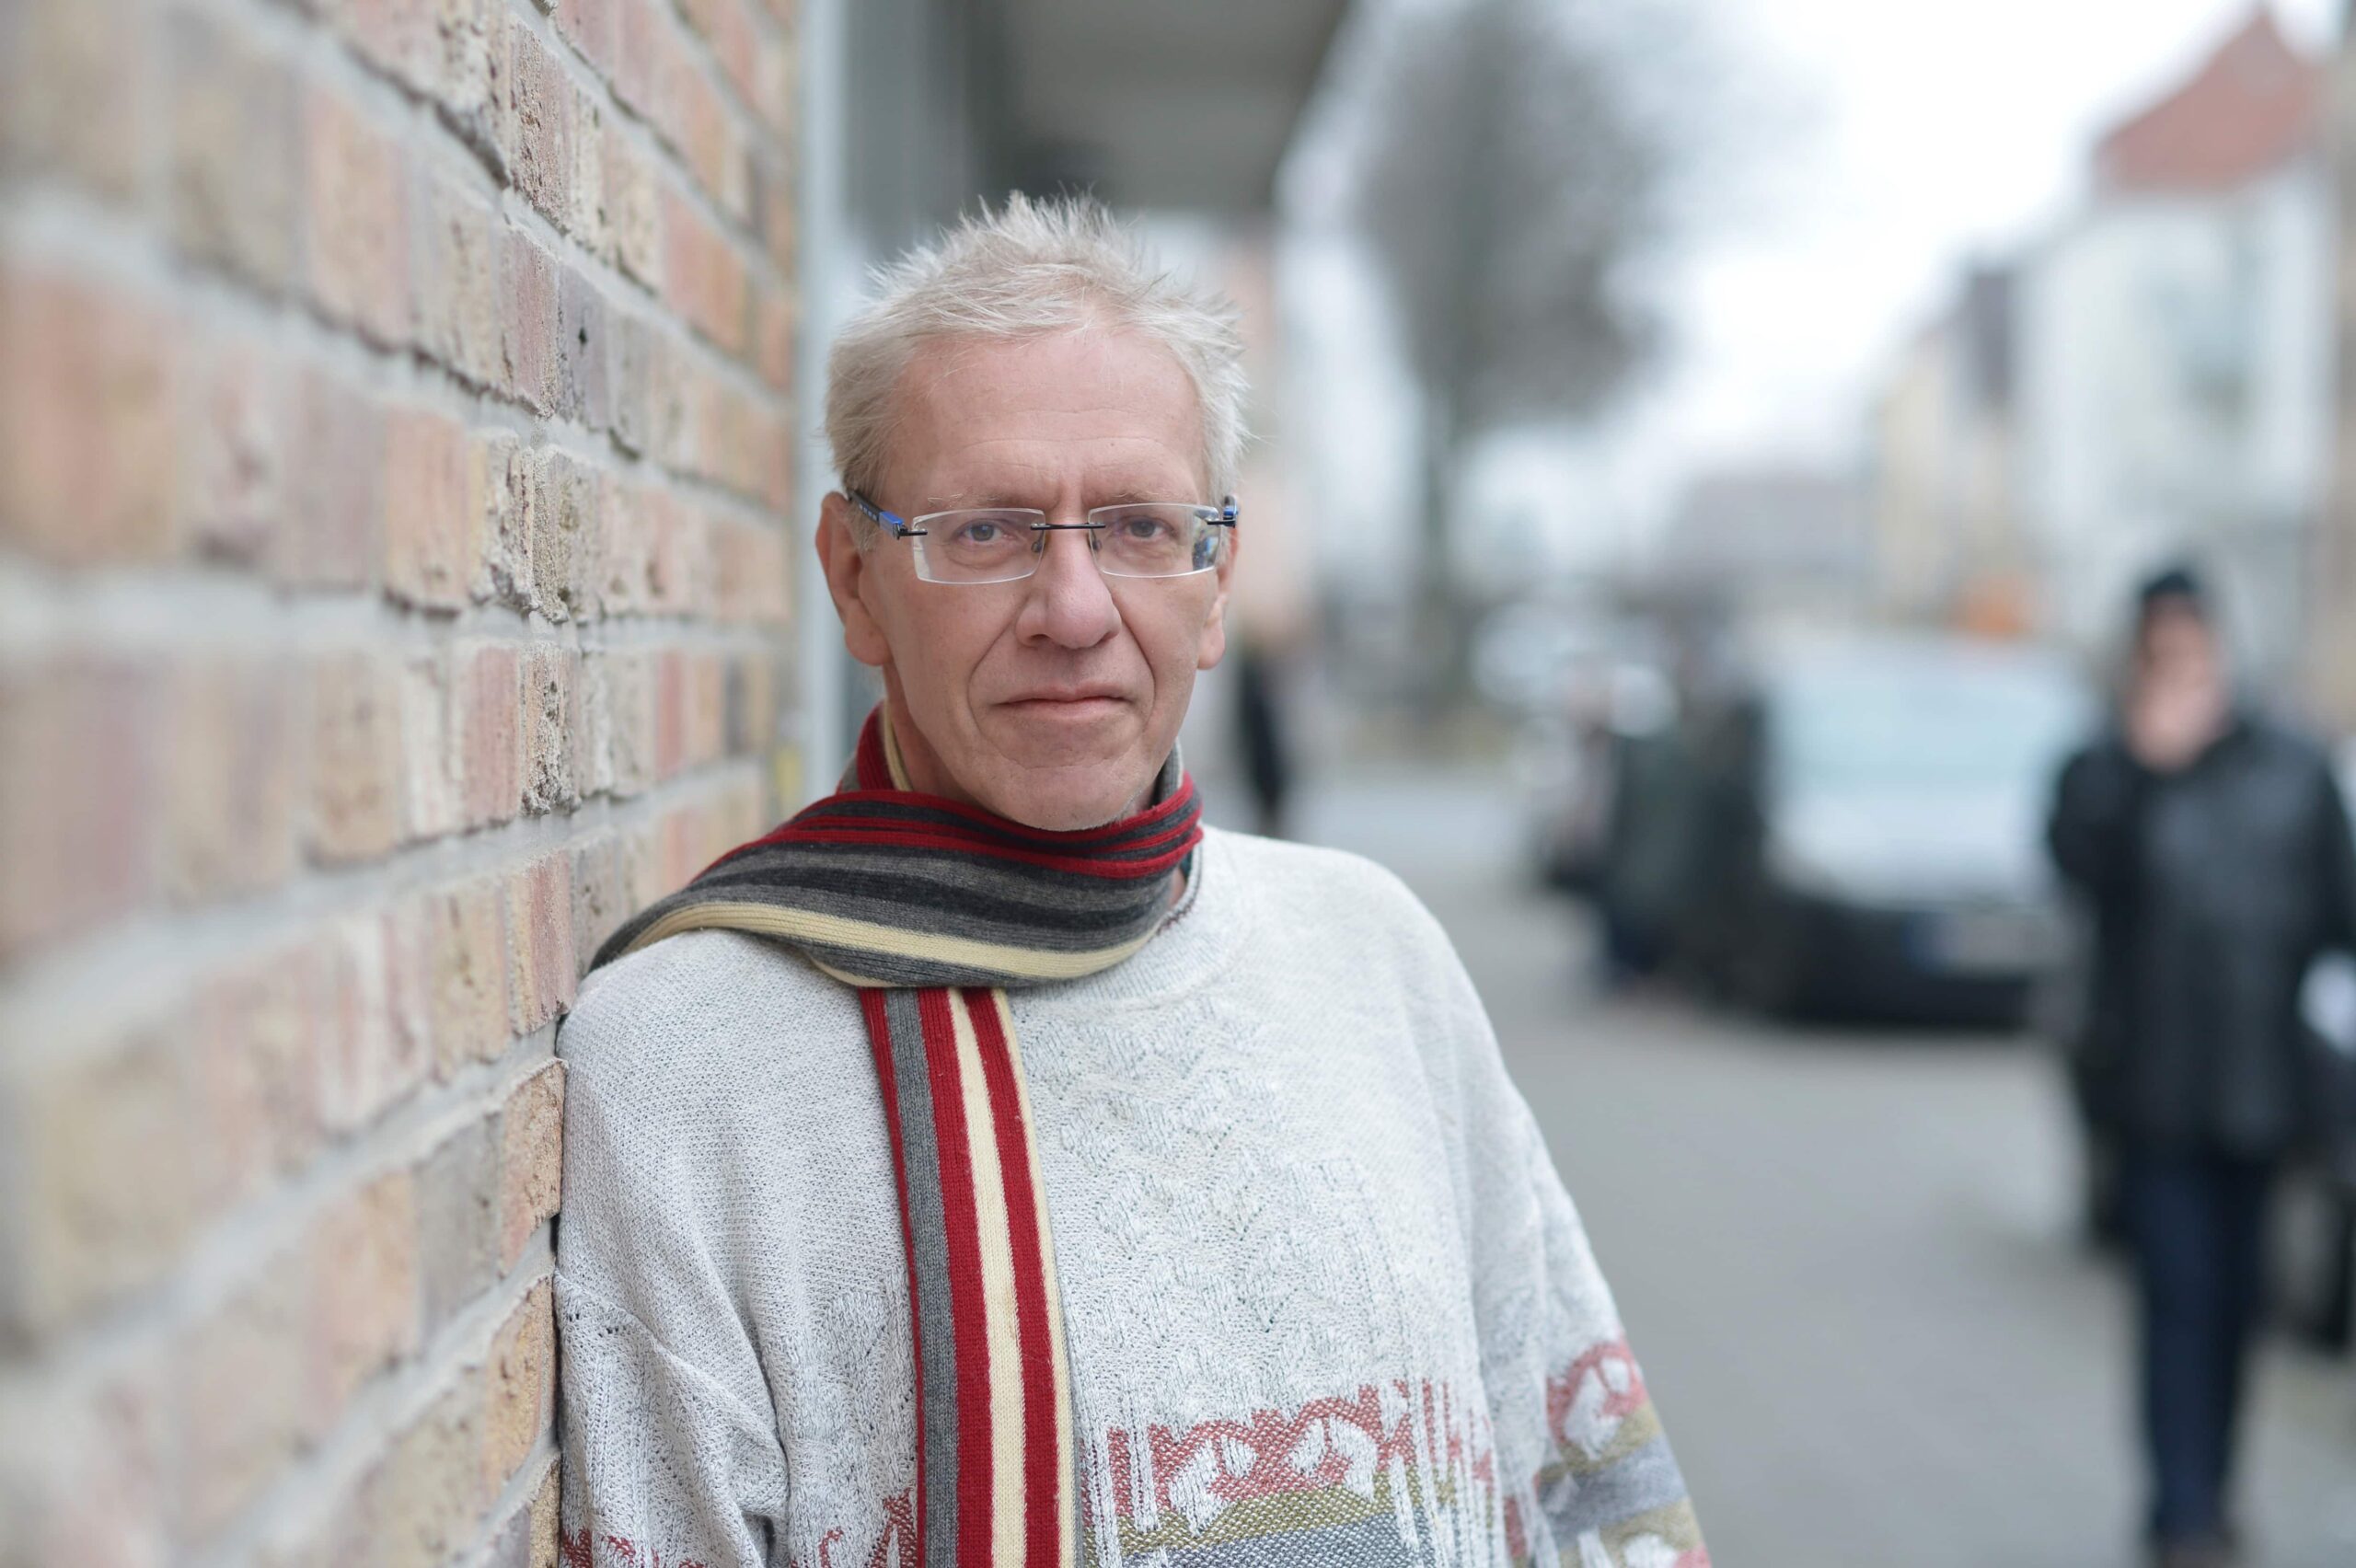 Betreuungshelfer Markus Urban mit gestreiftem Schal und Brille, neben einer Backsteinwand